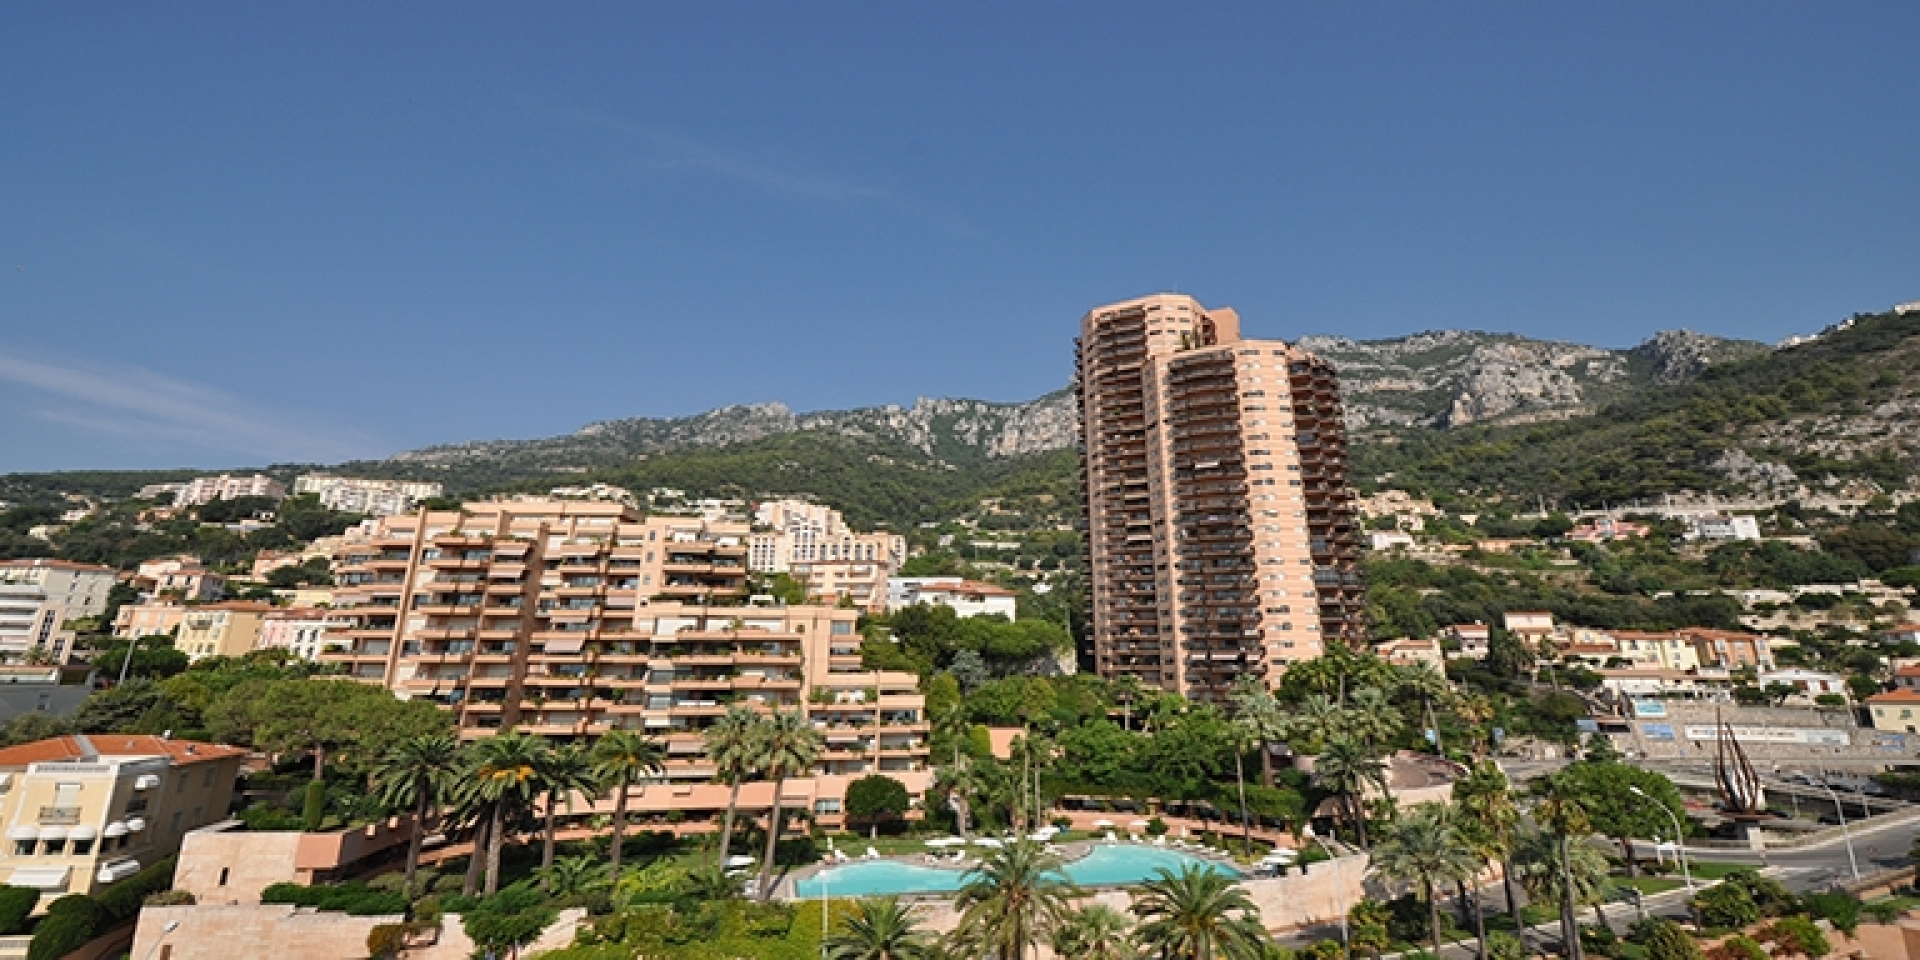 Dotta 2 rooms apartment for sale - PARC SAINT ROMAN - La Rousse - Monaco - img0004-enews